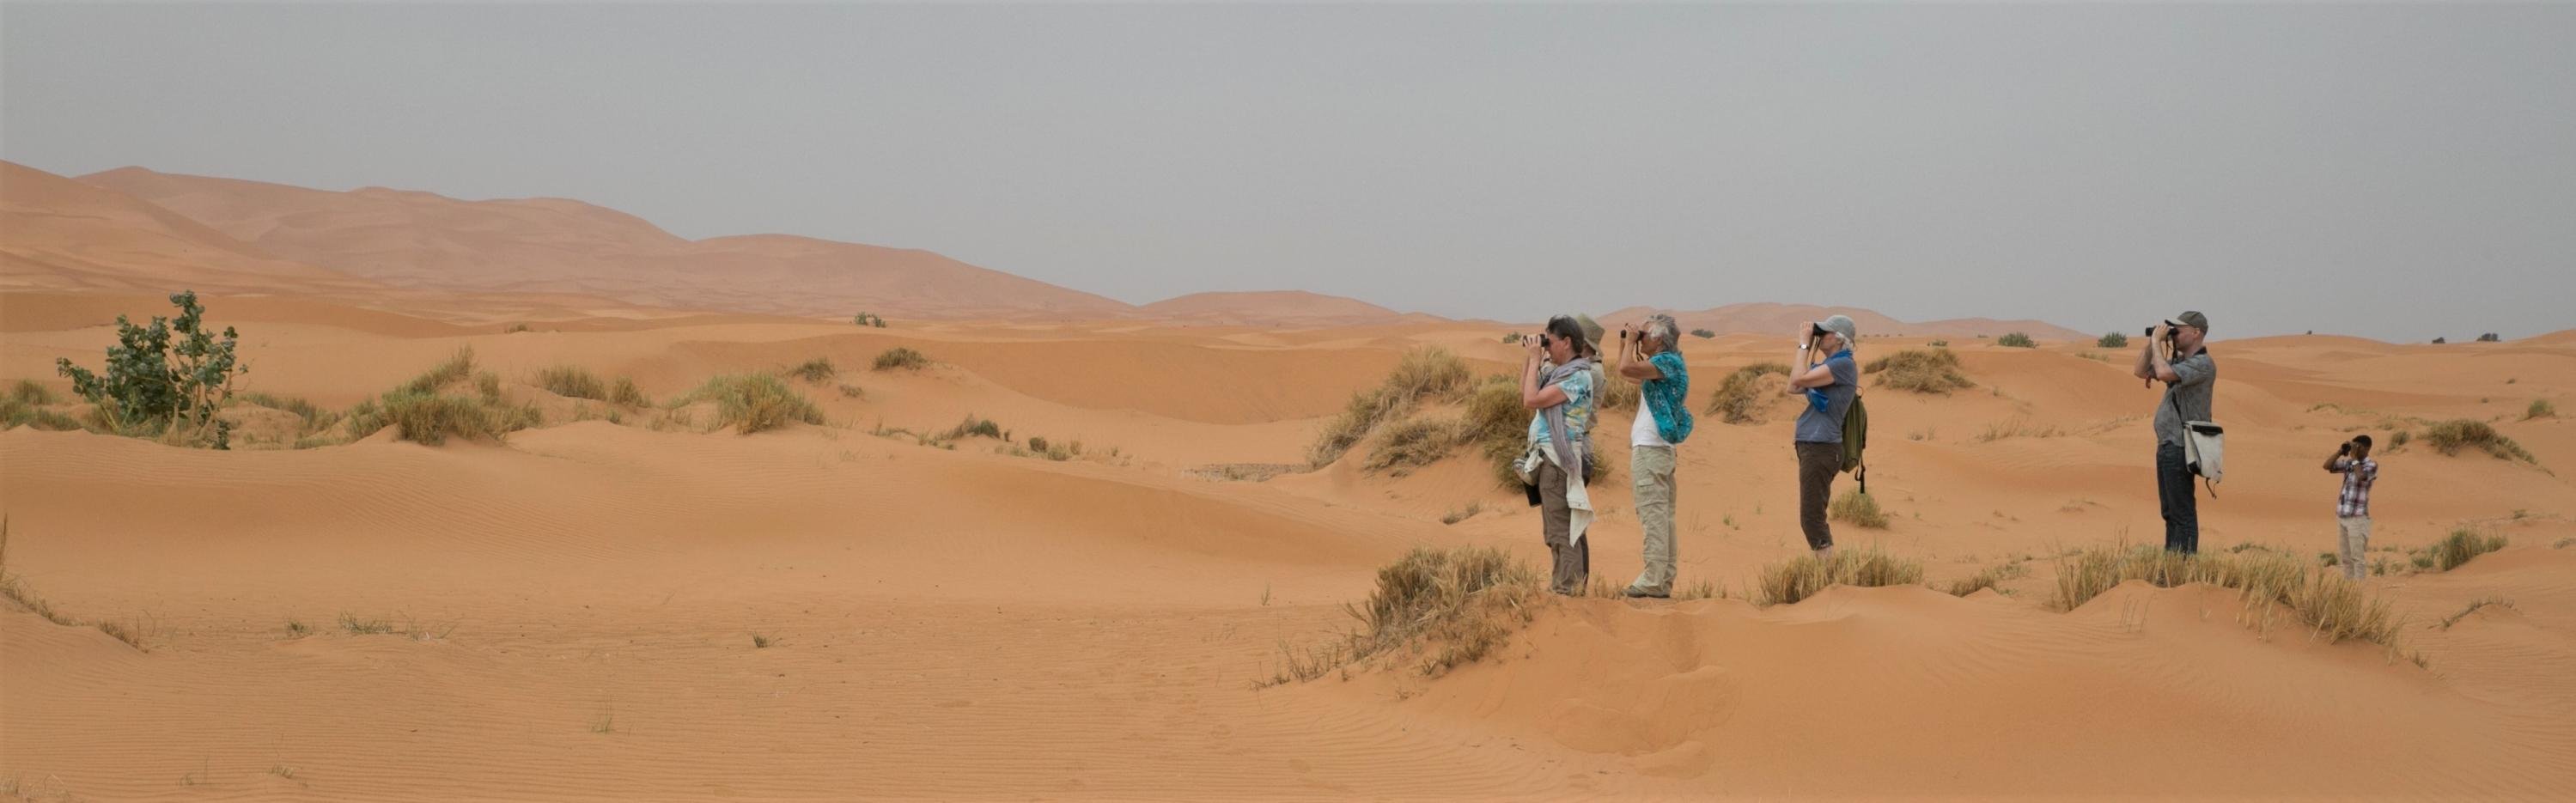 Vogelaars in de woestijn - Marokko - Barend van Gemerden